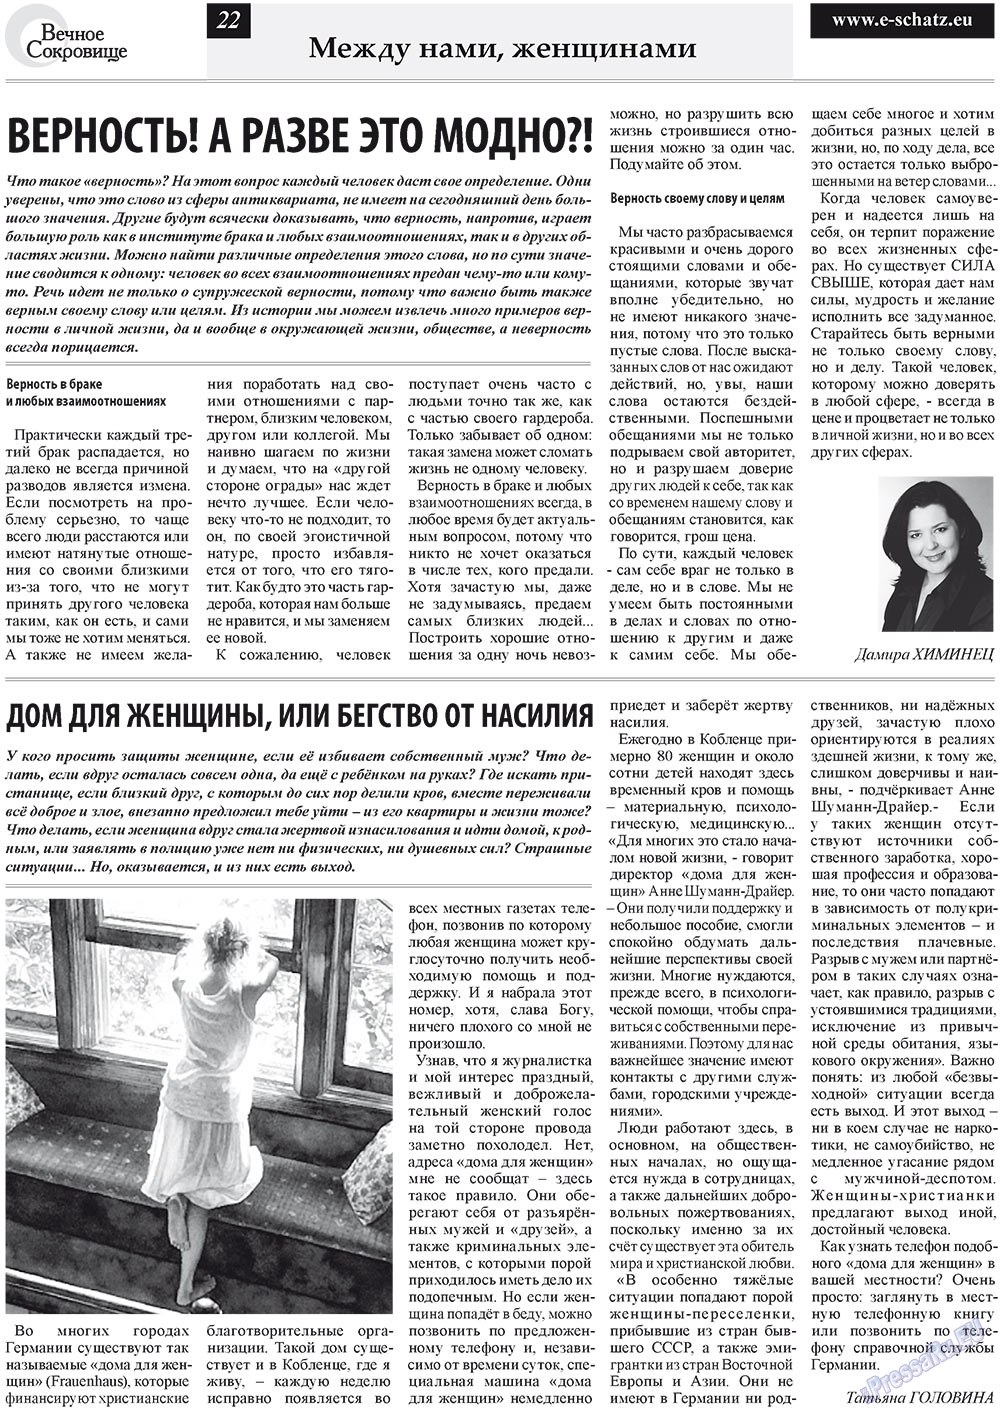 Вечное сокровище, газета. 2011 №3 стр.22